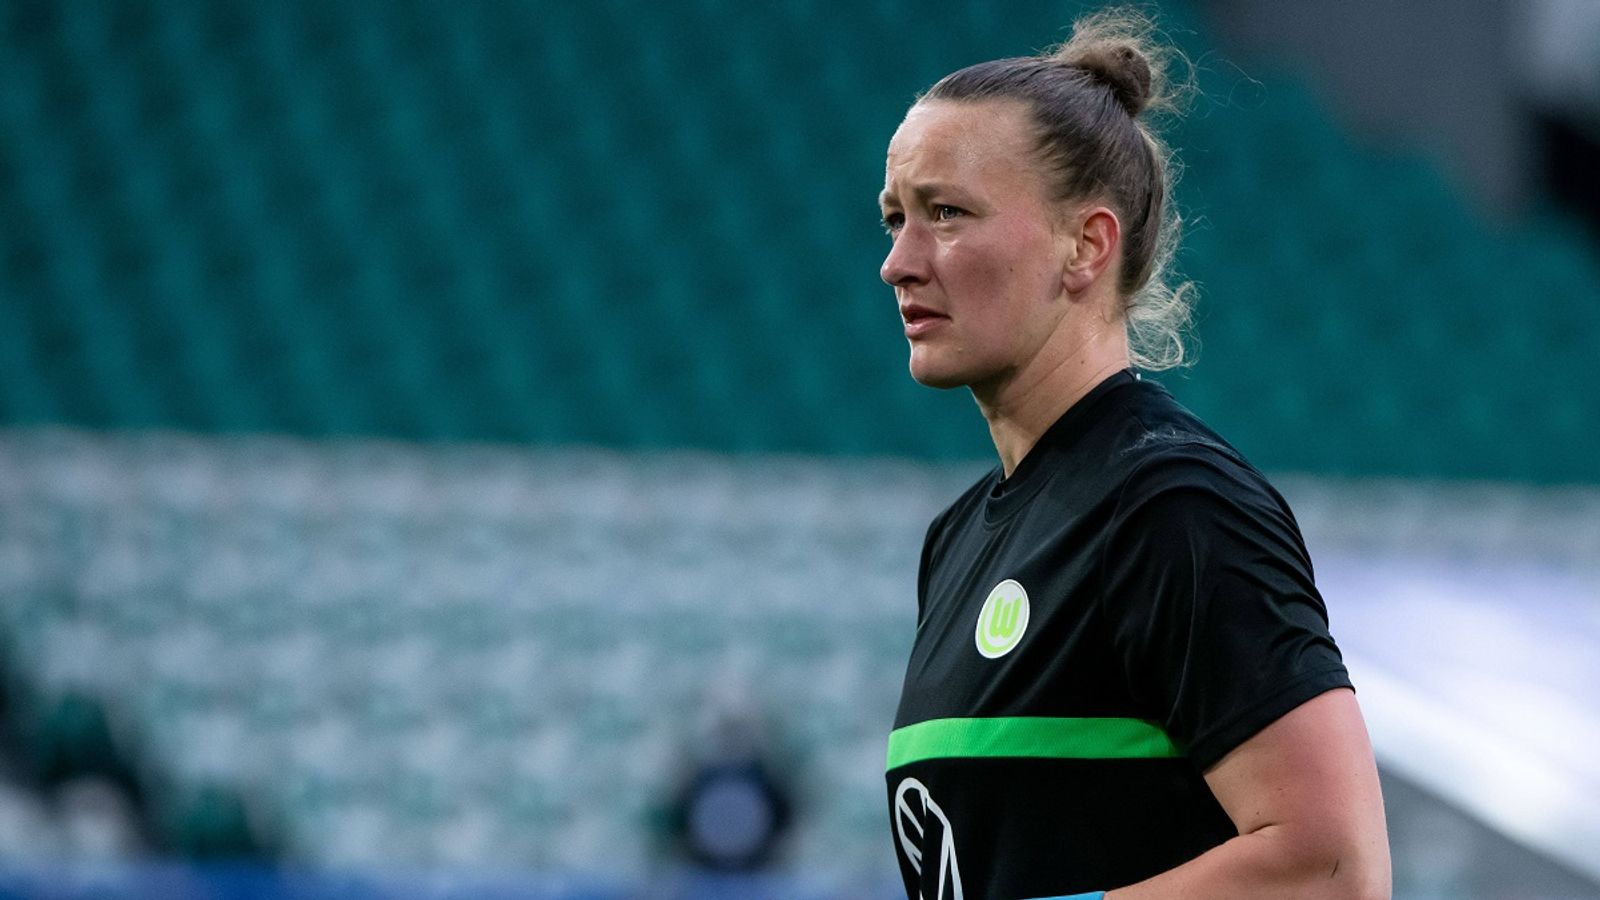 Wiadomości o piłce nożnej kobiet: udział Almutha Schulta w półfinale Pucharu DFB jest wątpliwy |  wiadomości piłkarskie